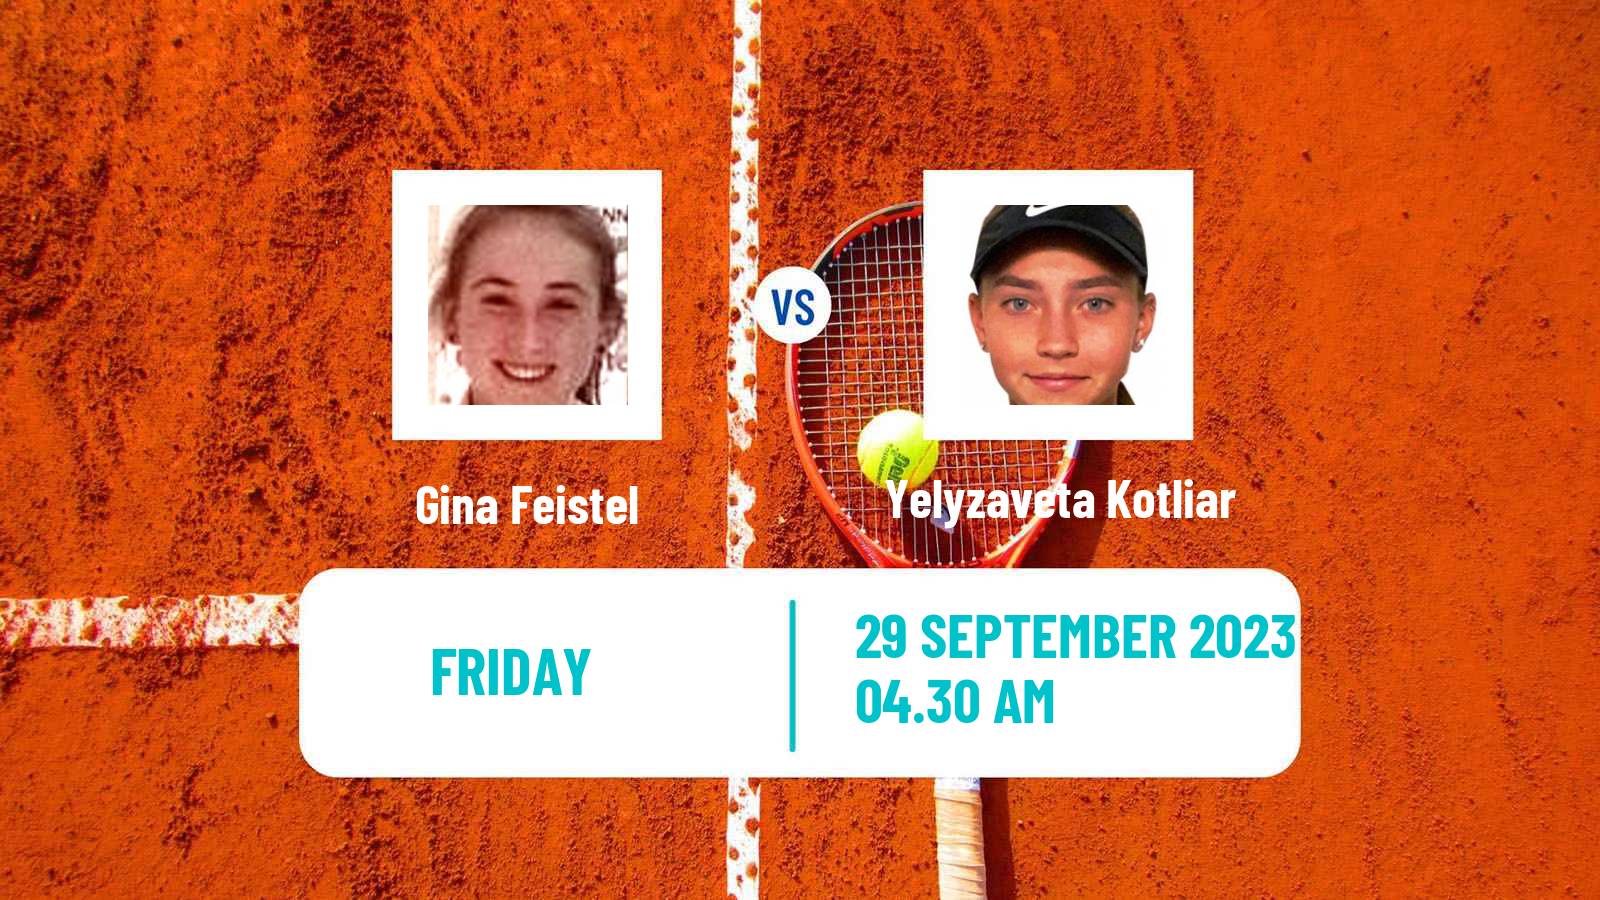 Tennis ITF W15 Monastir 34 Women Gina Feistel - Yelyzaveta Kotliar